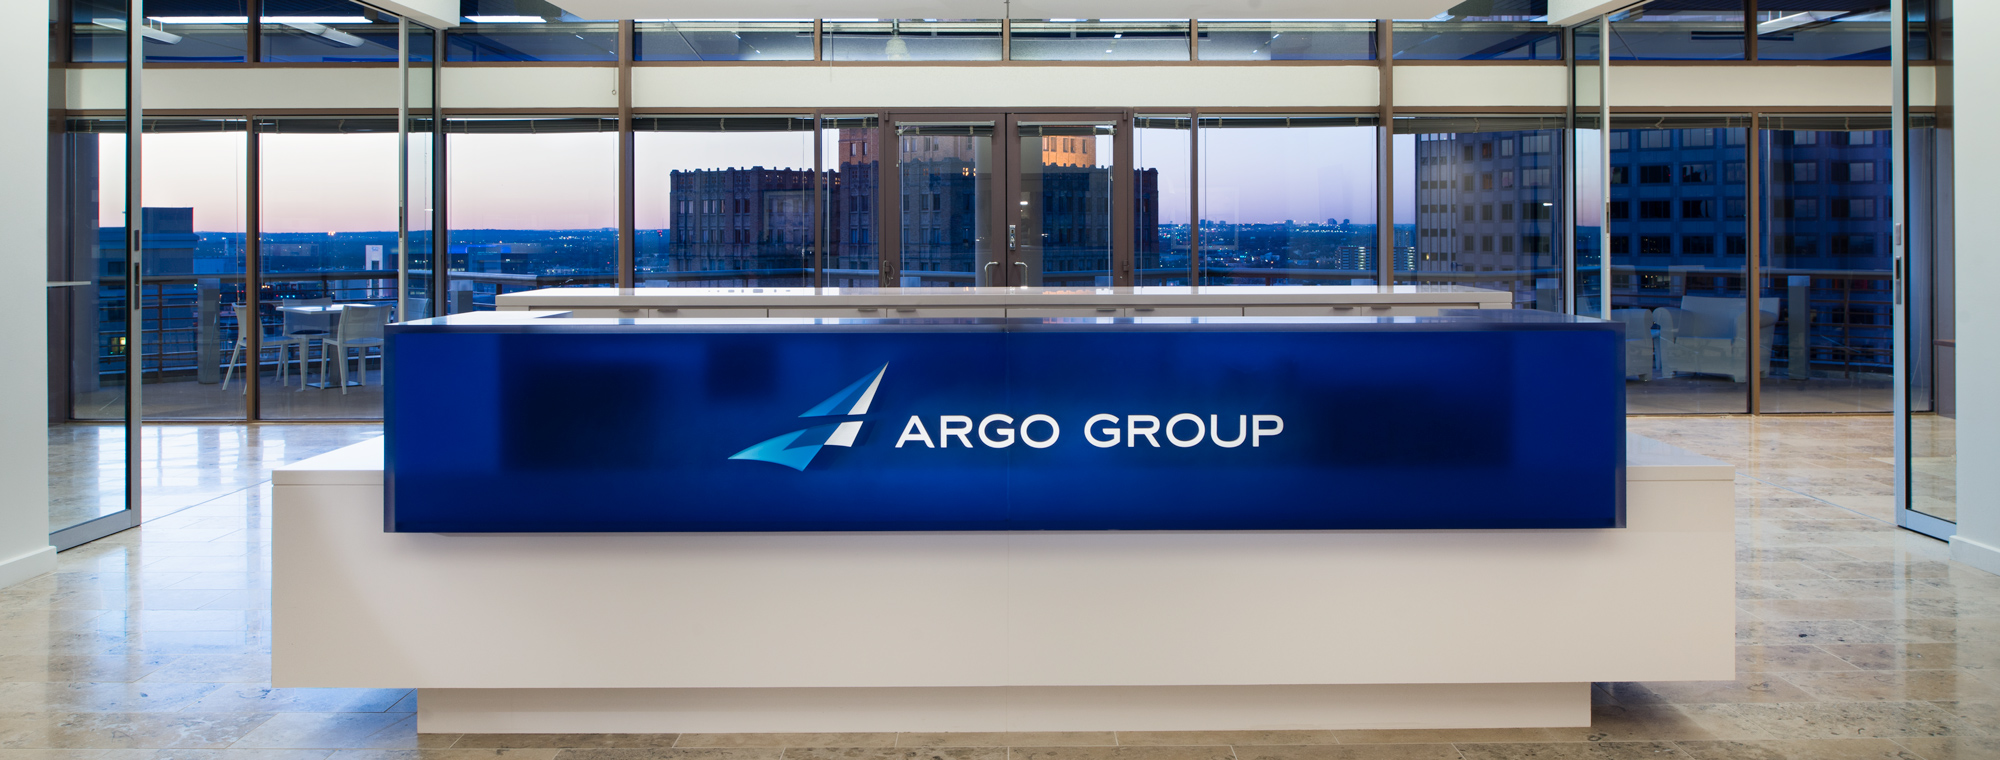 GO to ARGO Group